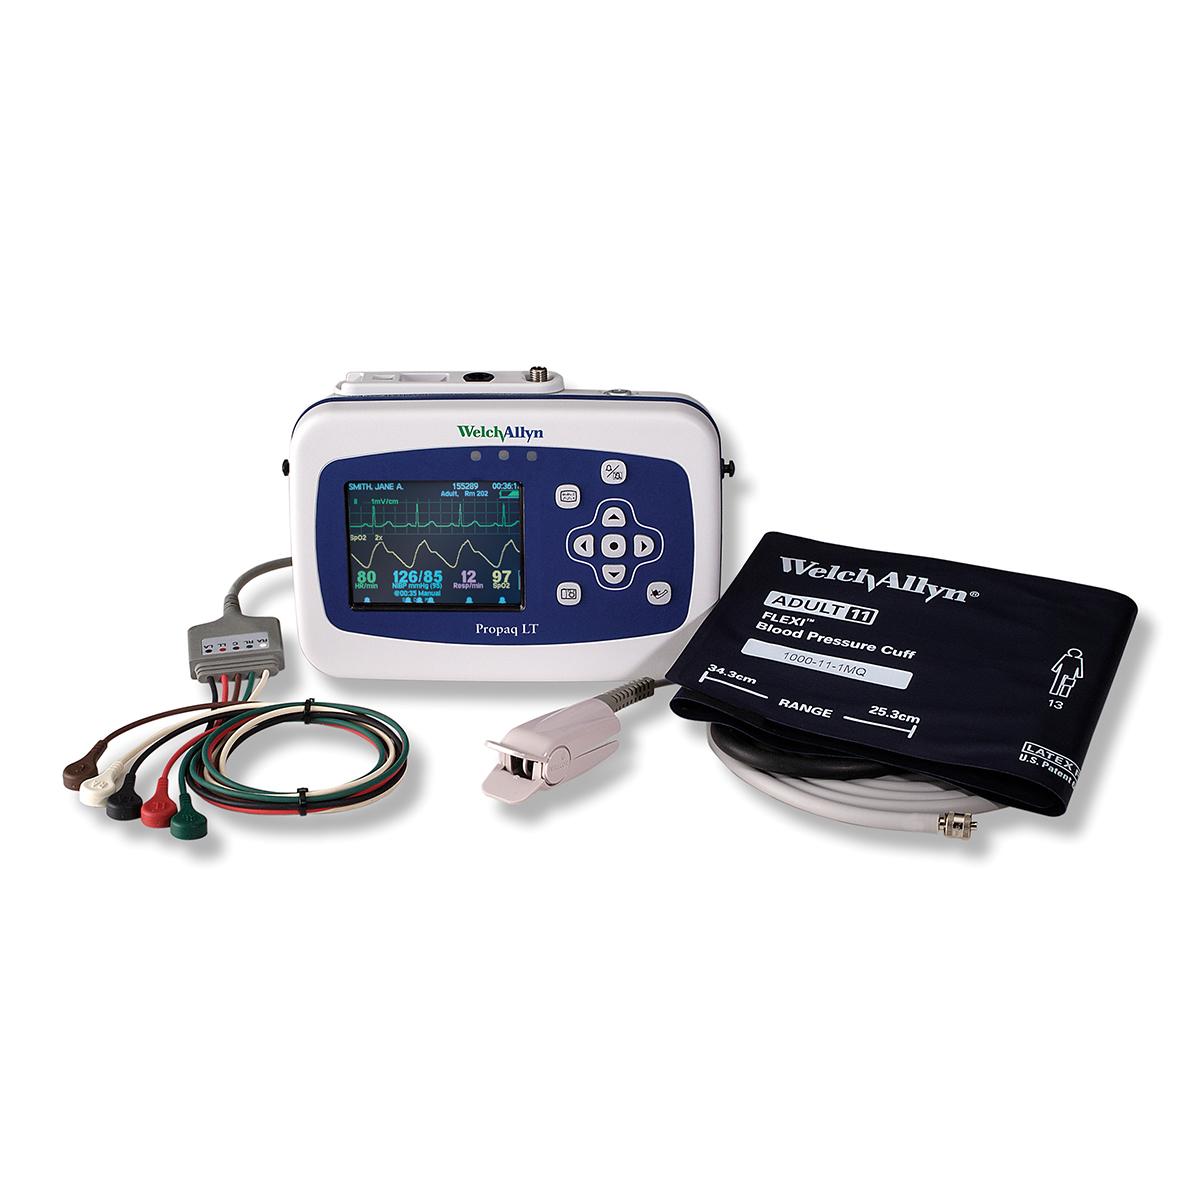 Monitor Welch Allyn Propaq LT z mocowaniem na 6 odprowadzeń i mankietem Welch Allyn FlexiPort do pomiaru ciśnienia krwi.